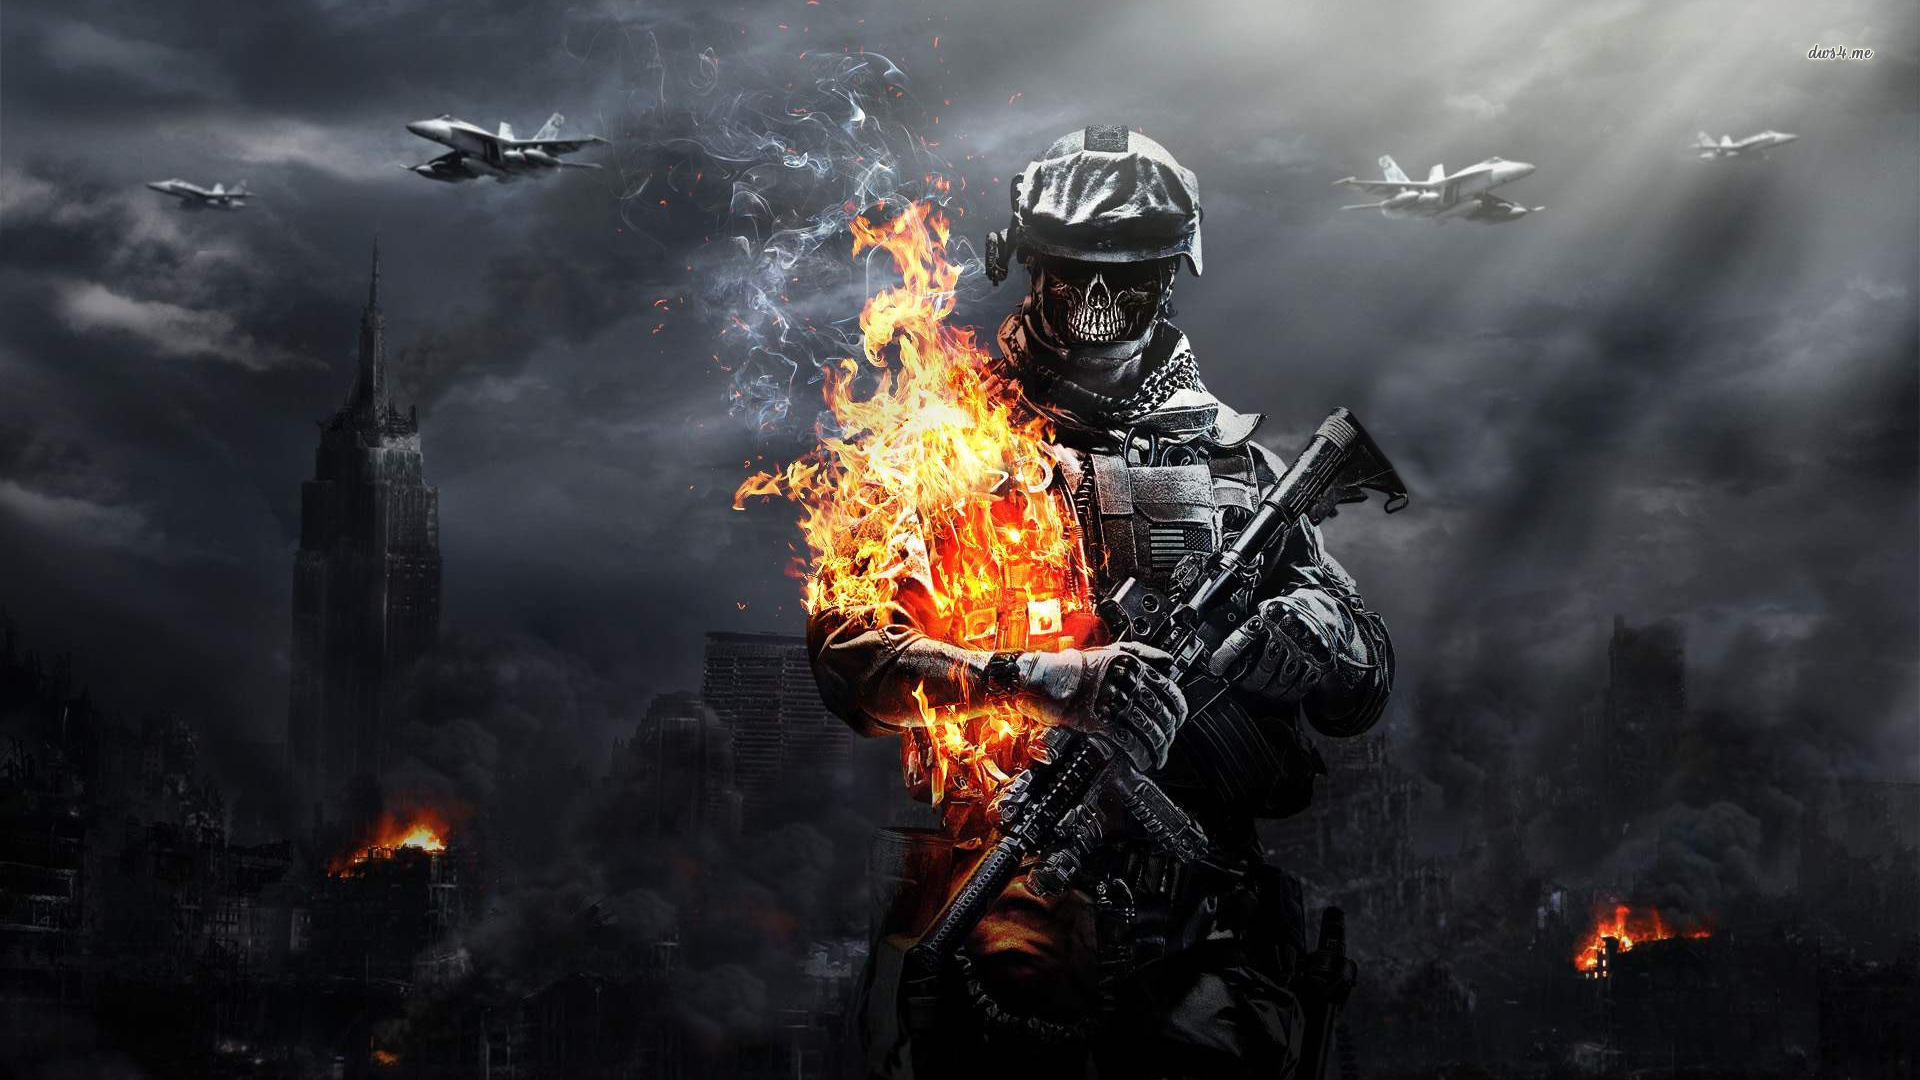 Wallpaper Pc Hd - Battlefield 3 Skull Fire Soldier , HD Wallpaper & Backgrounds